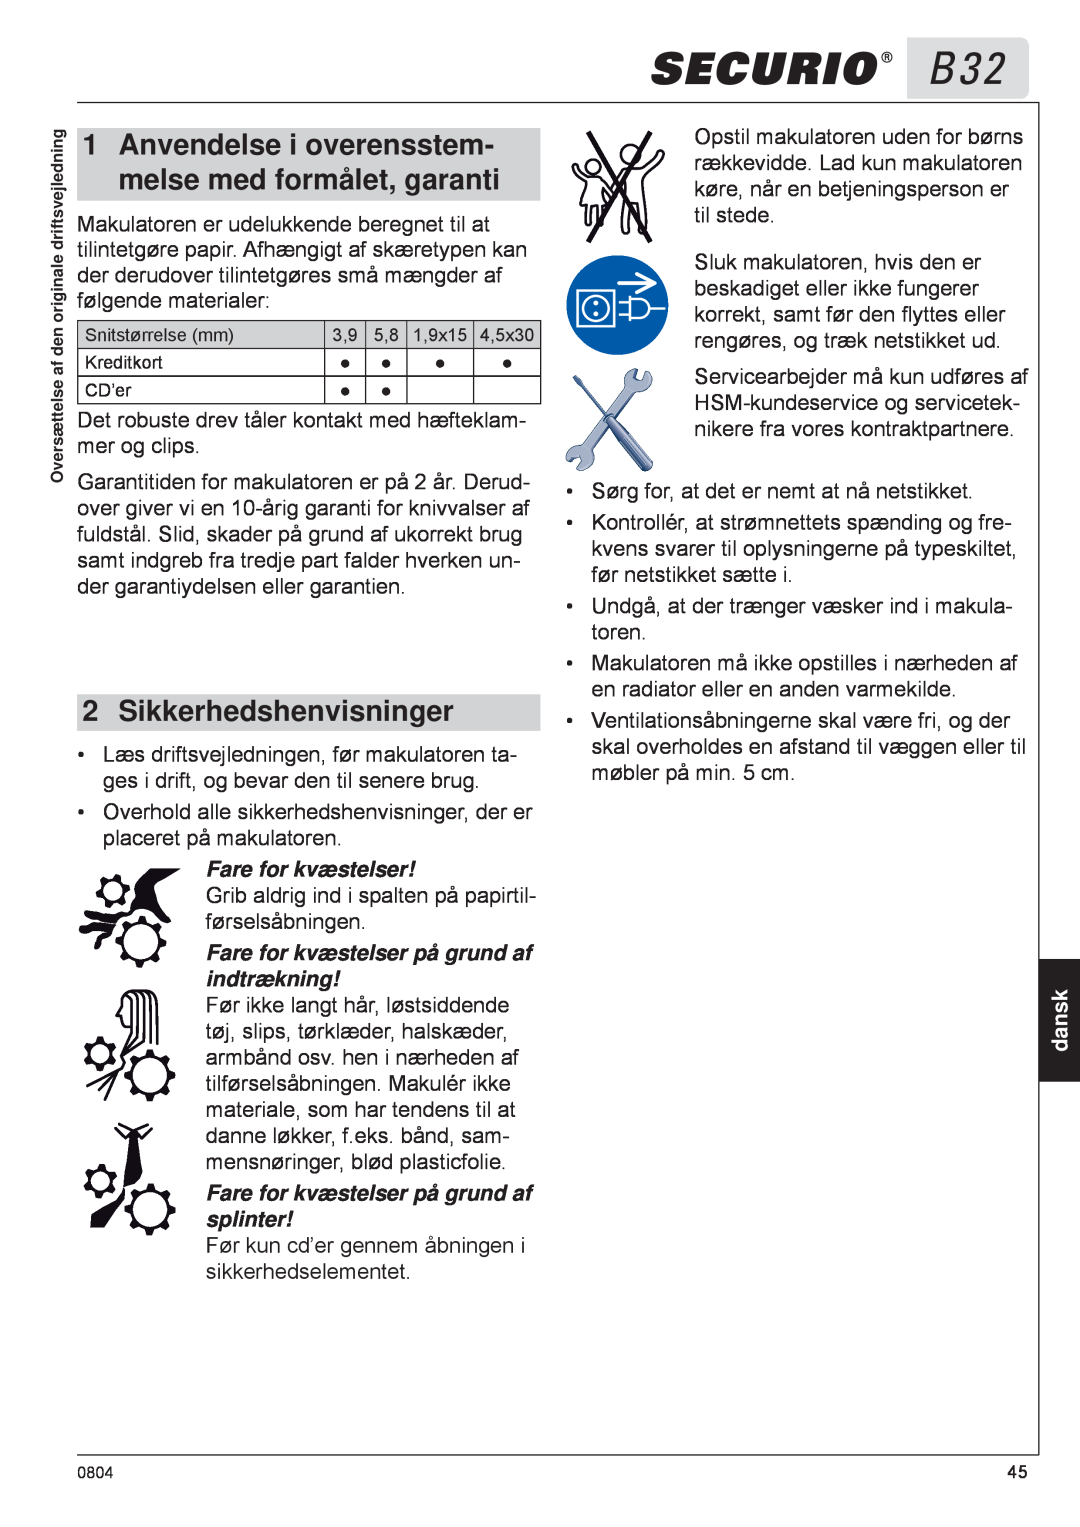 HSM B32 manual Anvendelse i overensstem, melse med formålet, garanti, Sikkerhedshenvisninger, Fare for kvæstelser, dansk 